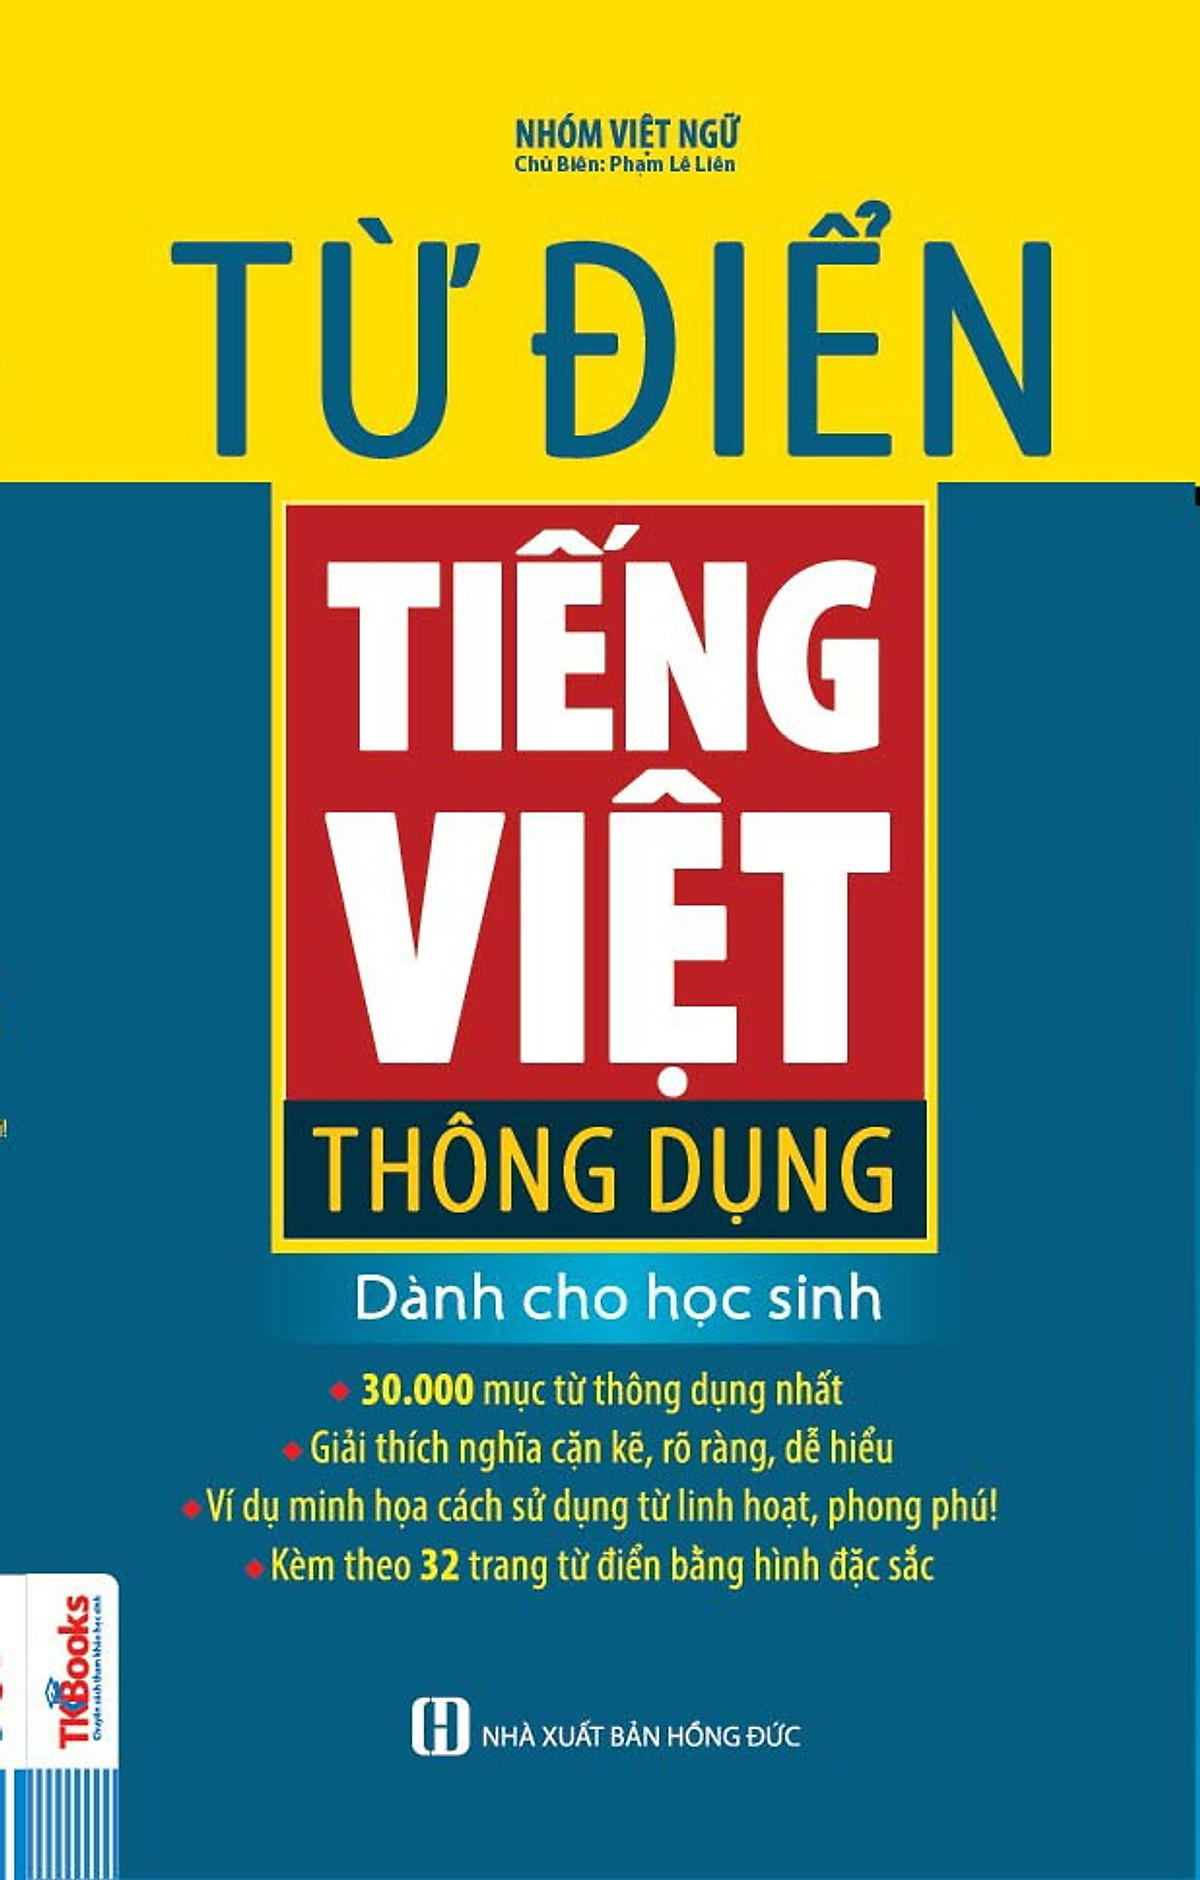 Từ Điển Tiếng Việt Thông Dụng Dành Cho Học Sinh (Phiên Bản Bìa Xanh)